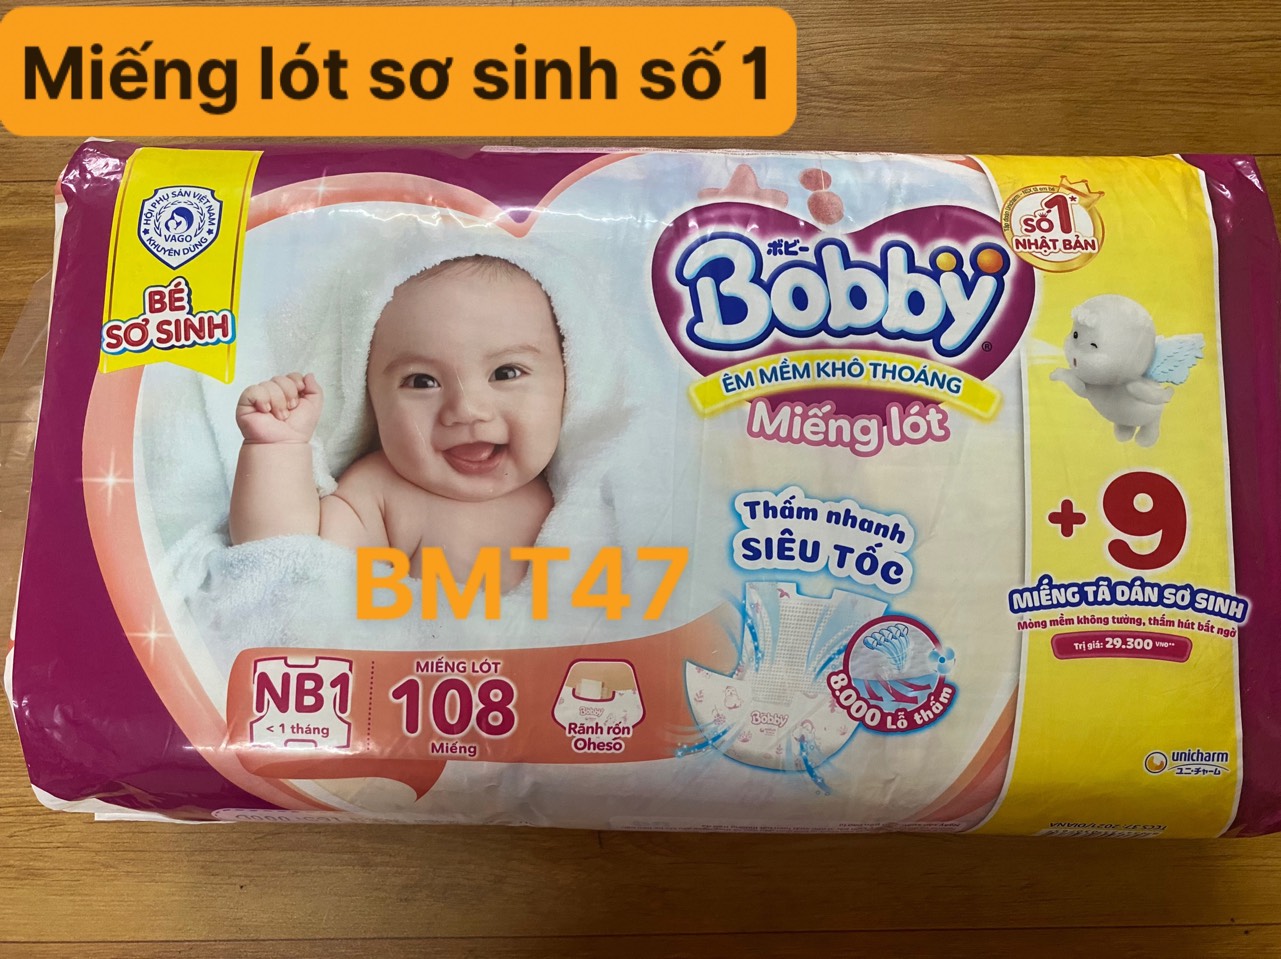 Miếng Lót Sơ Sinh Bobby Newborn 1